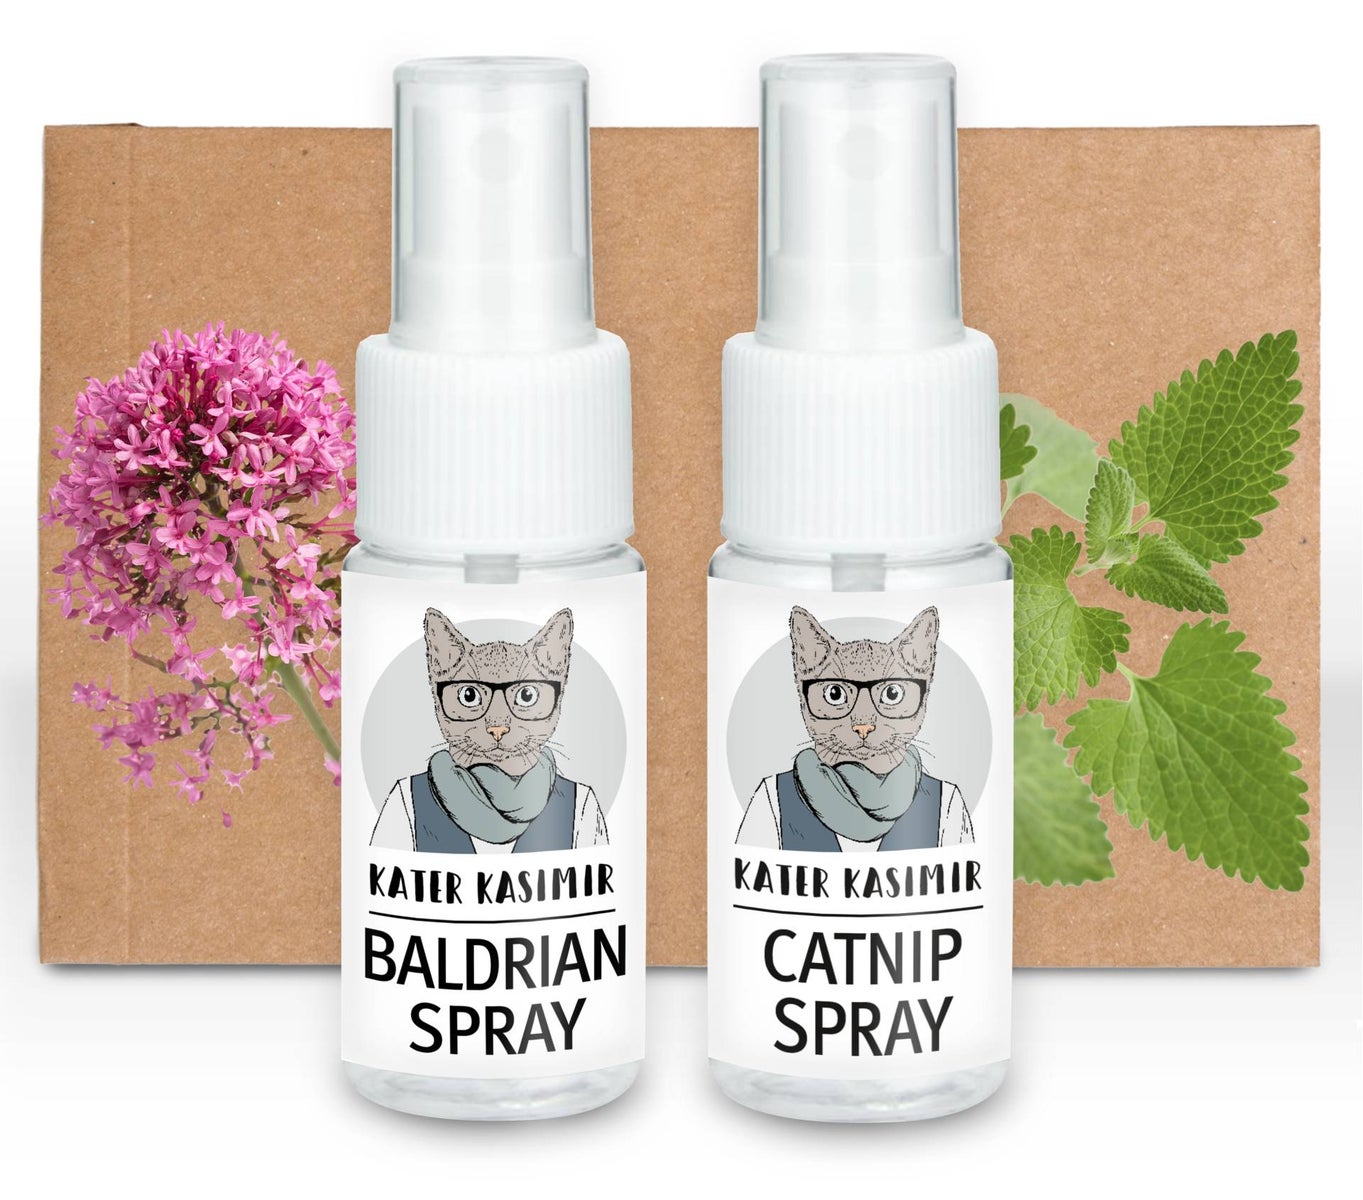 Katzenmize Spray und Baldrian Spray im 2er Pack. 2 x je 30 ml Spielspray für Katzen. Für Kratzbaum oder Katzenspielzeug